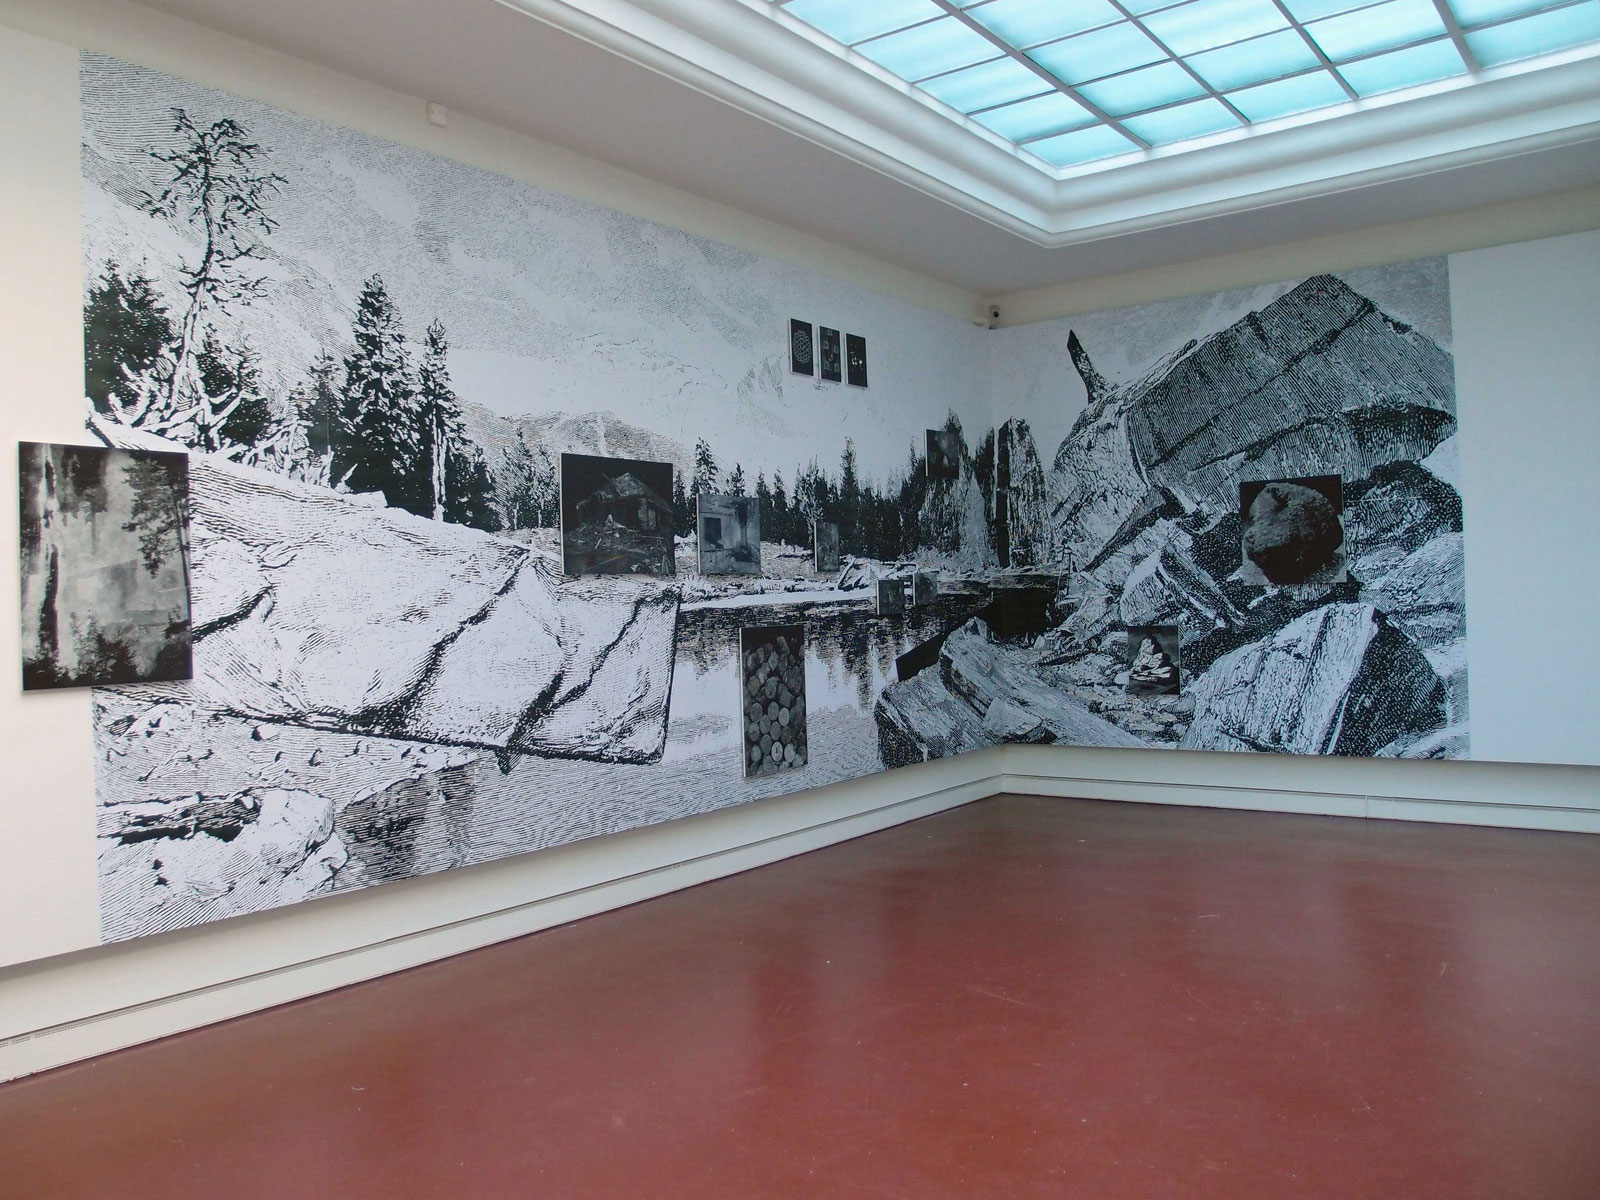 Wall paper in "Max-Pechstein-Förderpreis 2013", Kunstsammlungen Zwickau